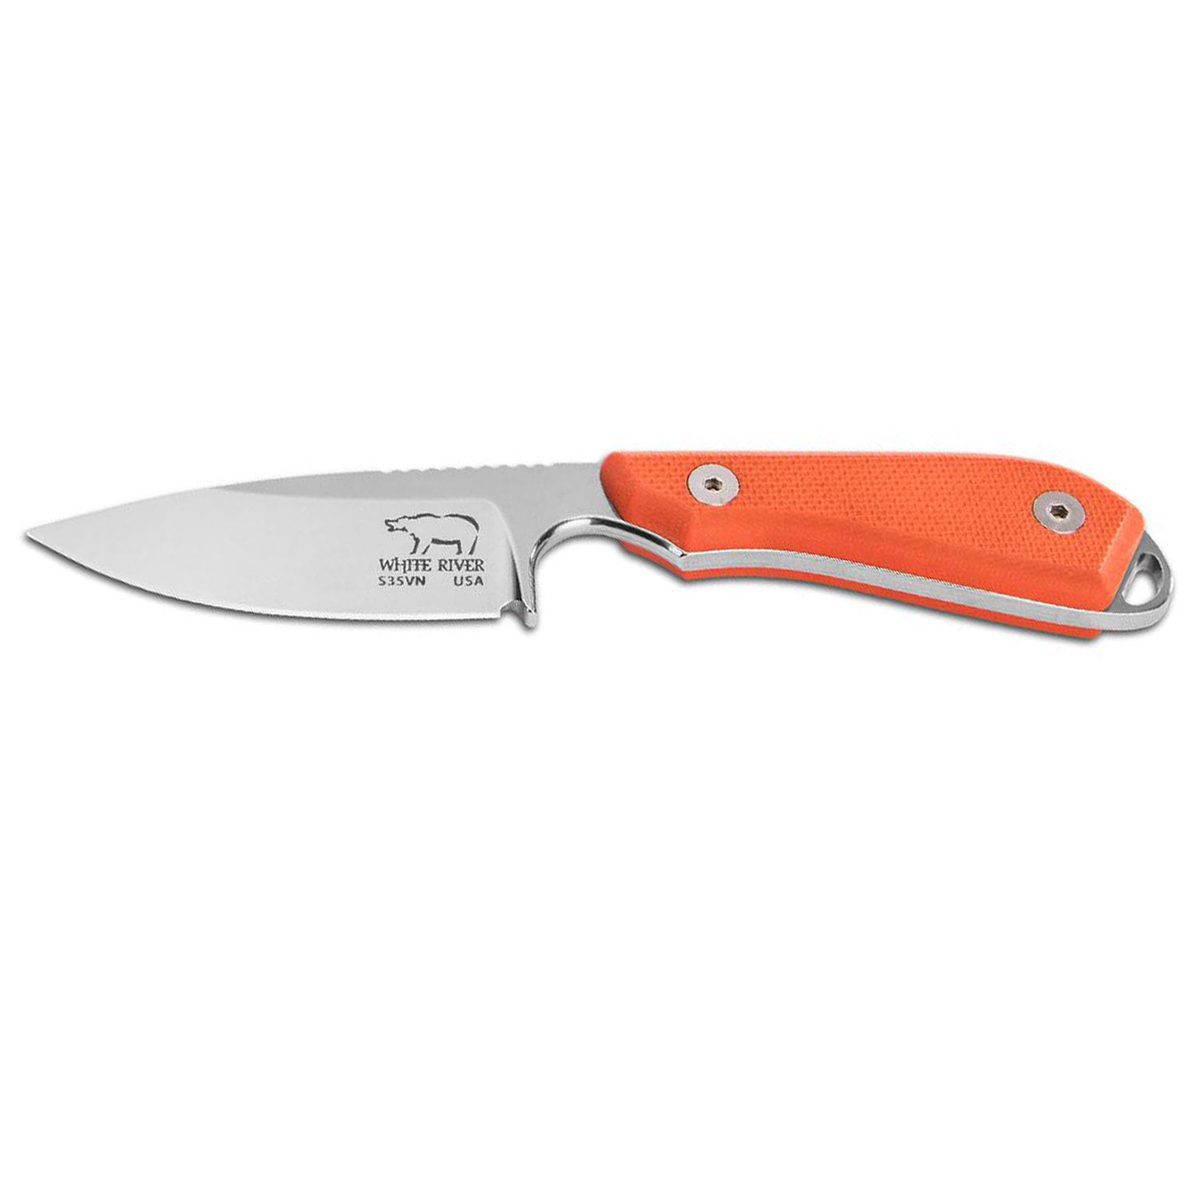 https://www.knives.com/medias/white-river-3-inch-m1-backpacker-pro-fixed-blade-knife-orange-1532105-1.jpg?context=bWFzdGVyfGltYWdlc3w0MTAxOXxpbWFnZS9qcGVnfGltYWdlcy9oNzUvaDlhLzkwMDQ2MzI3Njg1NDIuanBnfGFhYzY0MTkyZmYzY2FjMThlMzA0OWJiNWEyZjE0ZmZlMmUyZmM2MWEwZjQ0MGE5NzQxMjk4MjcwOGU1ODljYTQ